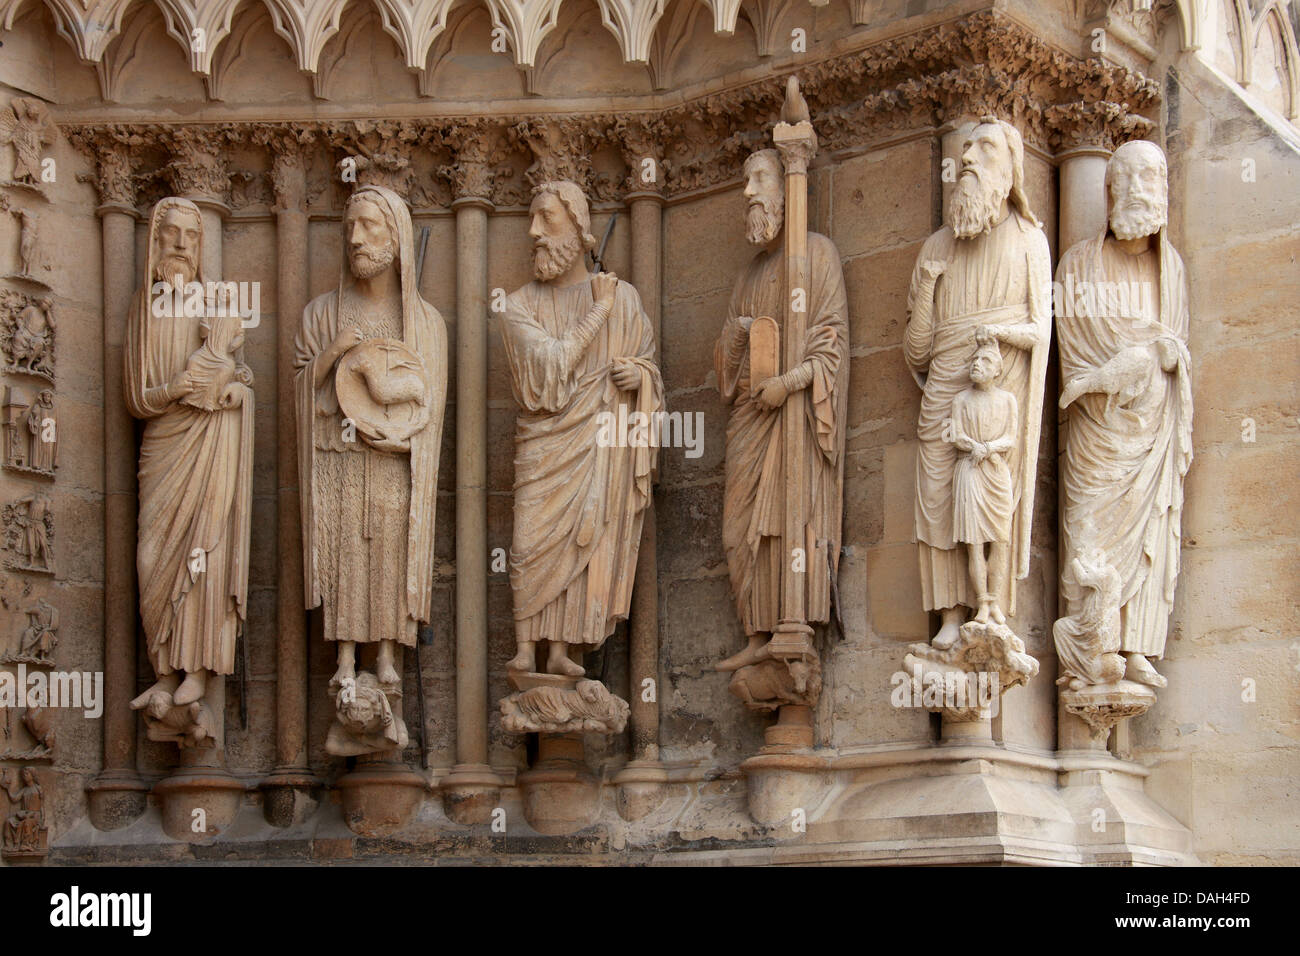 Cattedrale di Reims ingresso, Marne, Champagne-Ardenne, Francia. Statue di Simon, Giovanni Battista, Isaia, Mosè e Abramo. Foto Stock